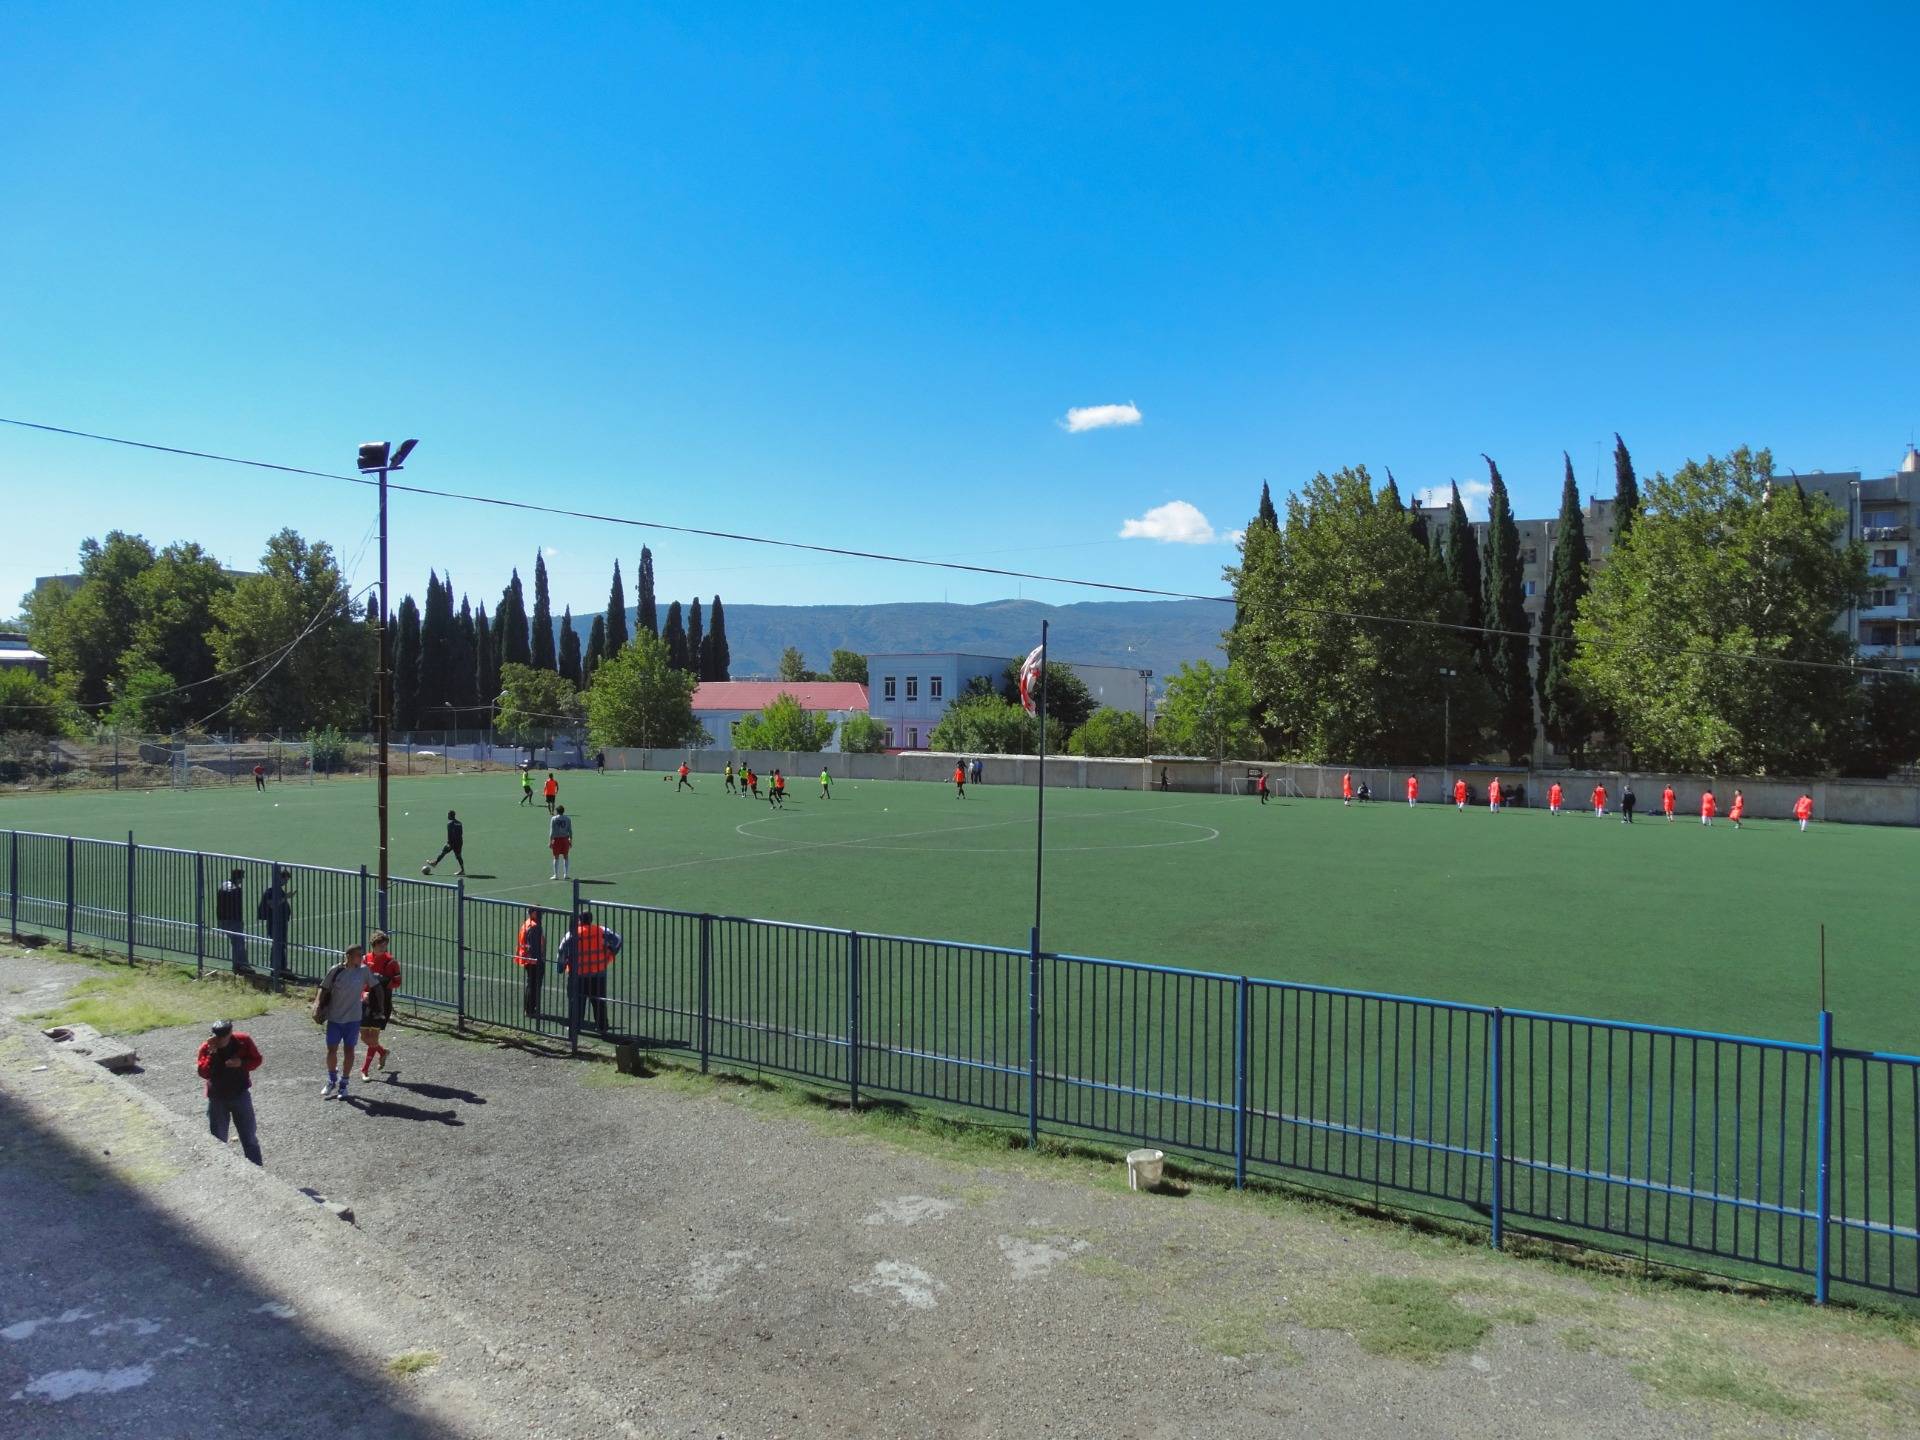 Stadiony Gruzji (11/?) - Stadion Rezerw Pracowych, Tbilisi - cz. 1, 25.9.2016.